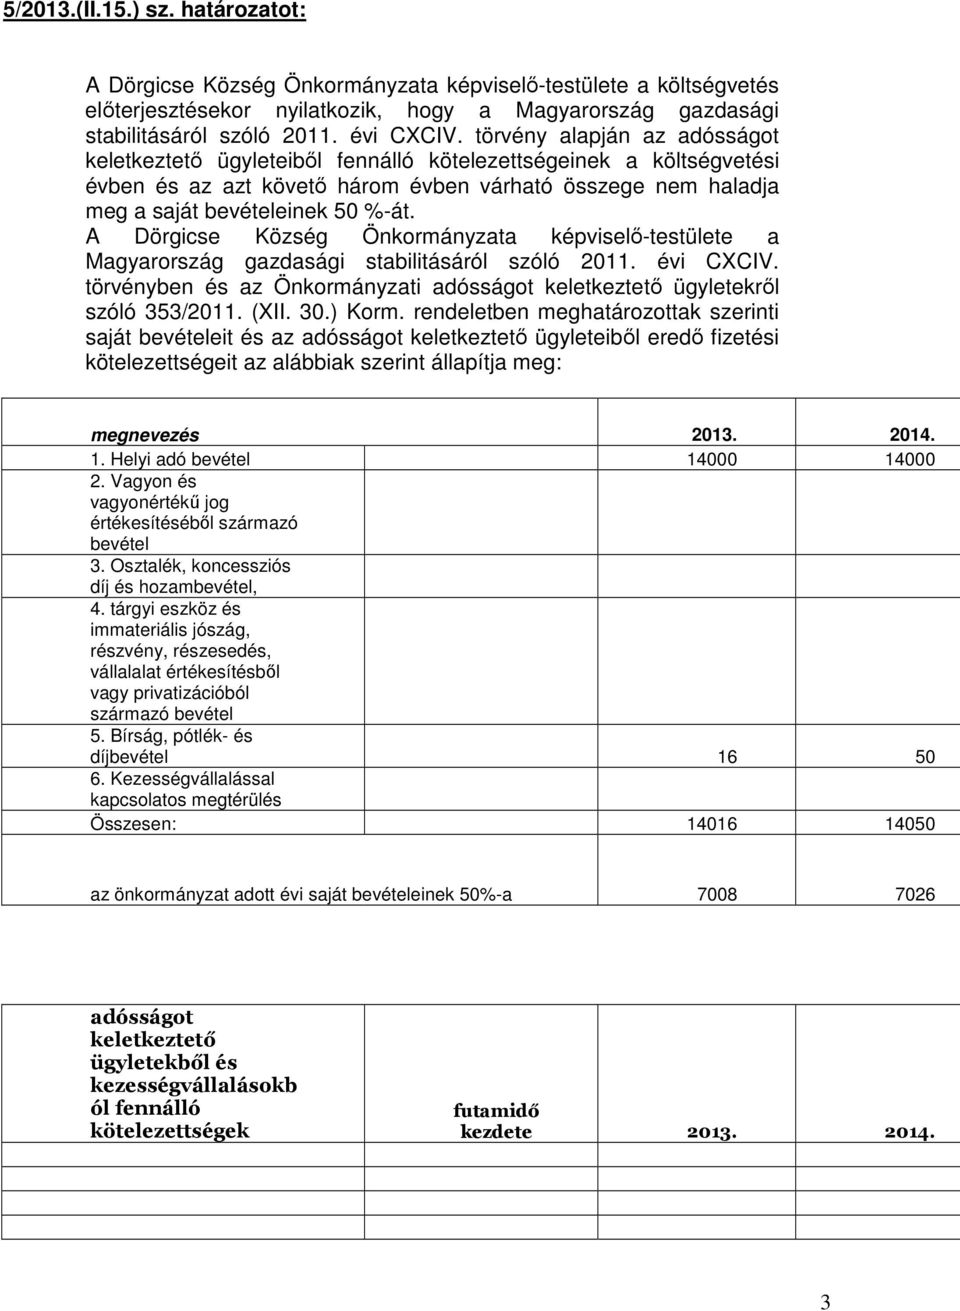 A Dörgicse Község Önkormányzata képviselı-testülete a Magyarország gazdasági stabilitásáról szóló 2011. évi CXCIV. törvényben és az Önkormányzati adósságot keletkeztetı ügyletekrıl szóló 353/2011.